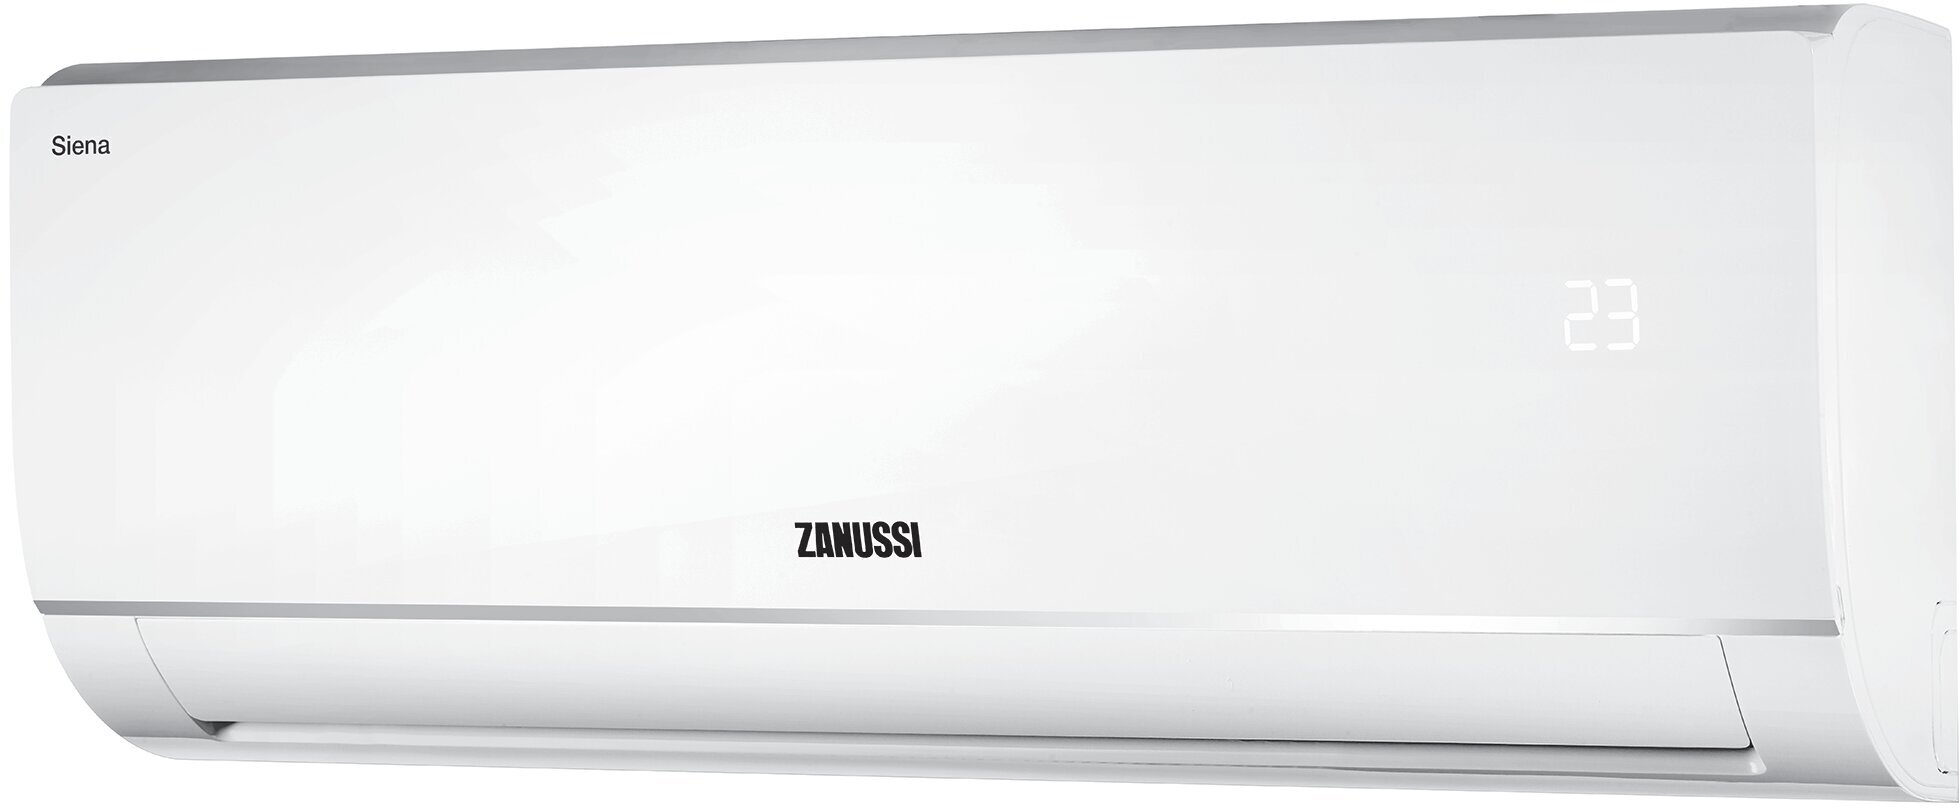 Сплит-система Zanussi Siena ZACS-07 HS/A21/N1 комплект